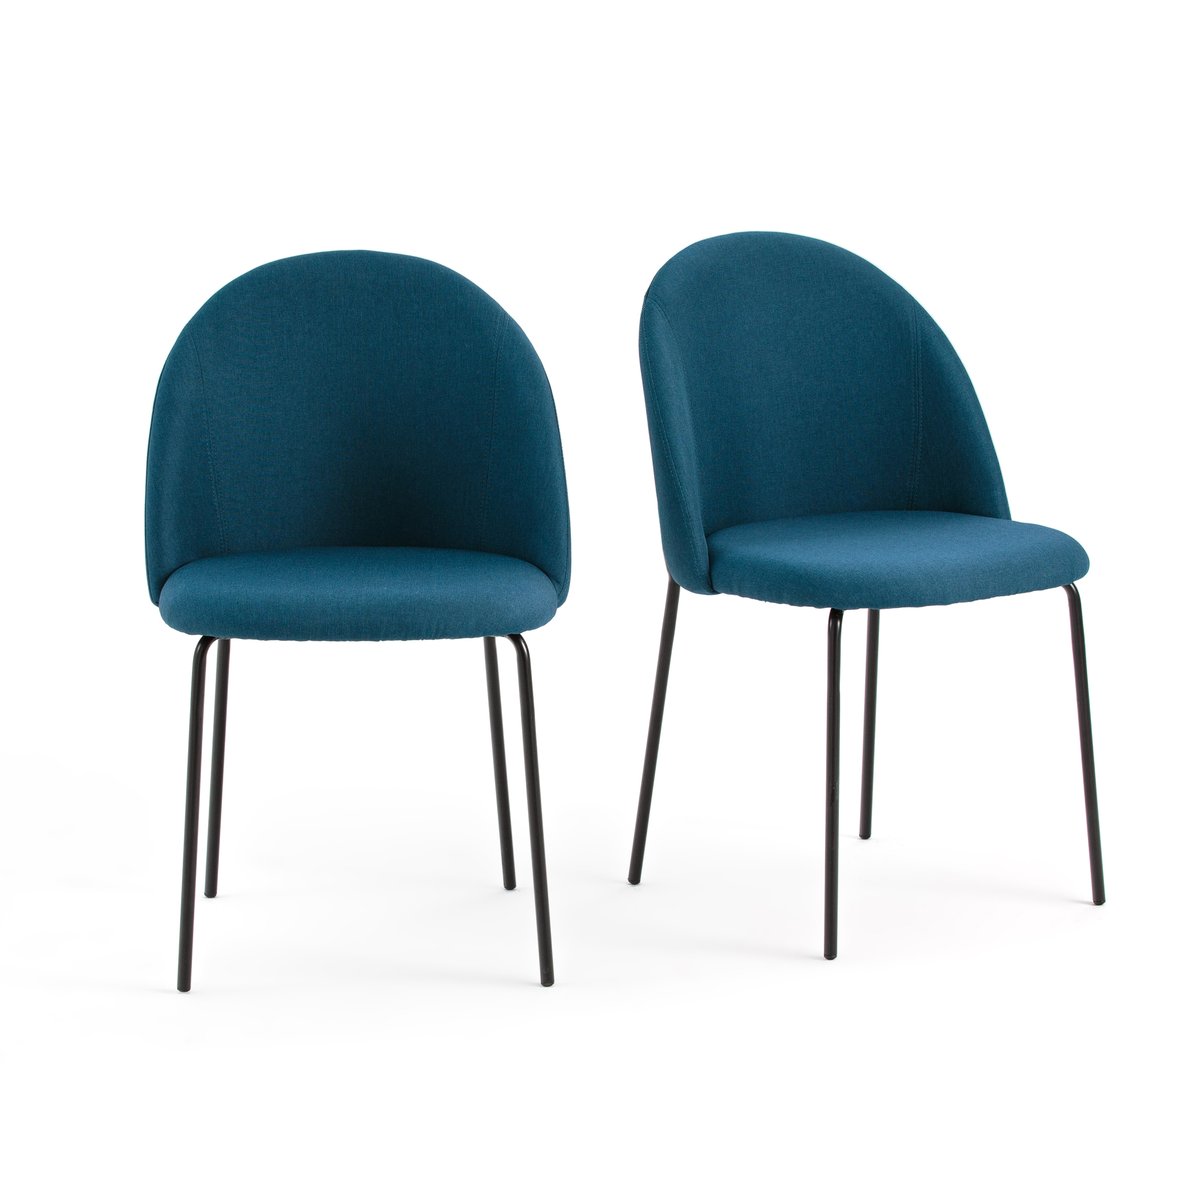 Комплект из 2 стульев NORDIE La Redoute единый размер синий комплект стульев симпл синий синий